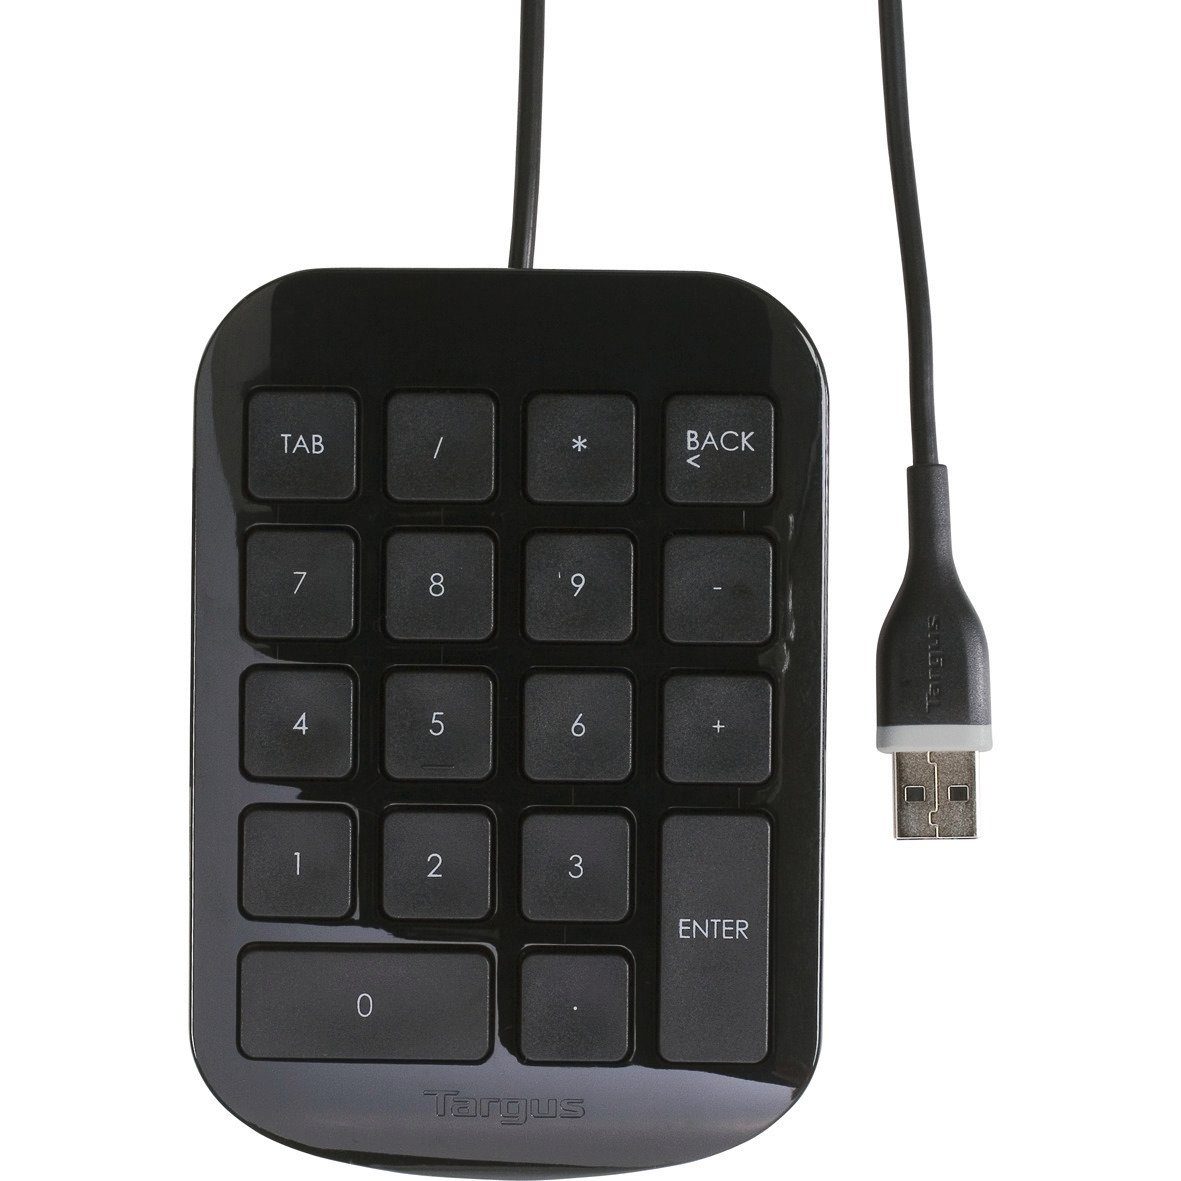 Targus Numeric Keypad USB Wired USB-Tastatur